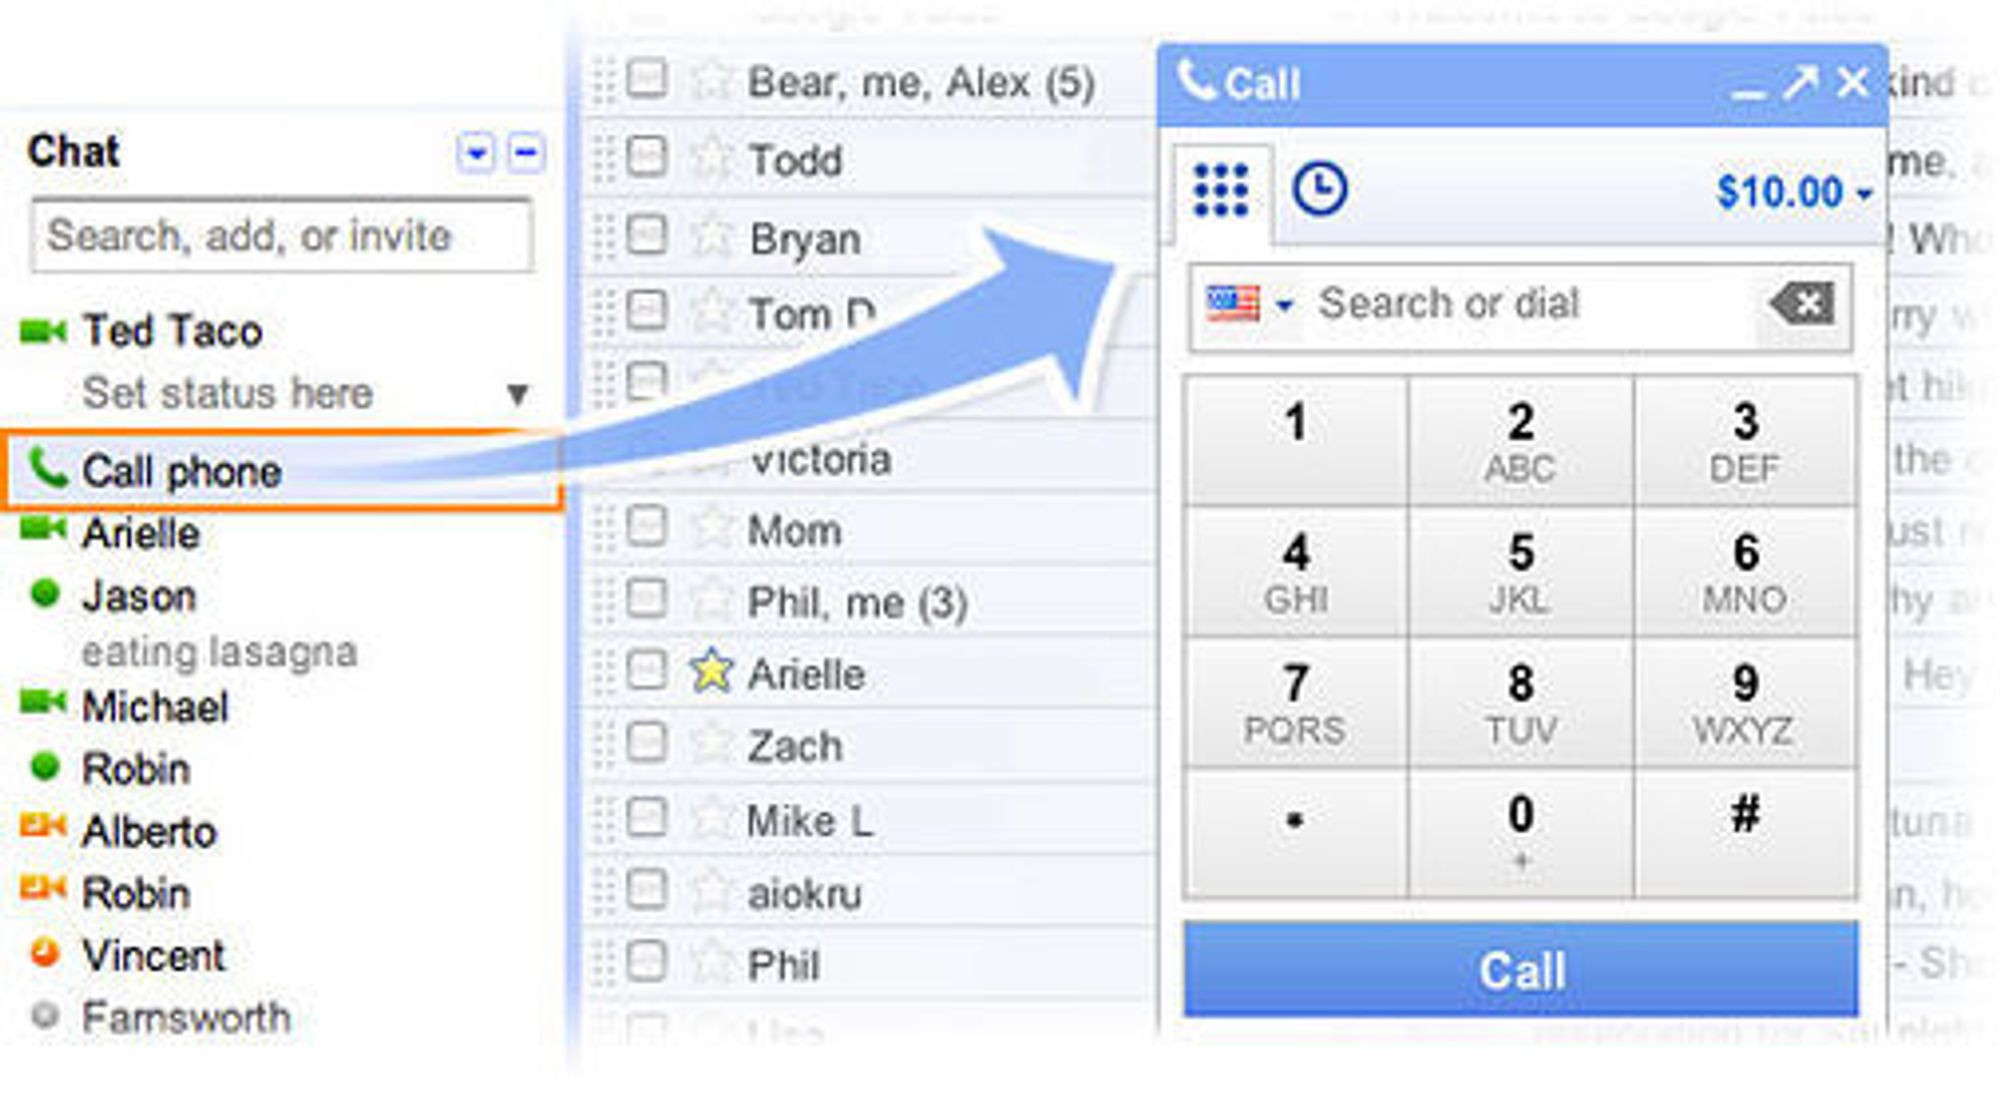 Med den nye Gmail-integrerte tjenesten kan man ringe til vilkårlige numre, til Gmail-kontaktene eller ved å klikke på telefon nummer oppgitt på websider.